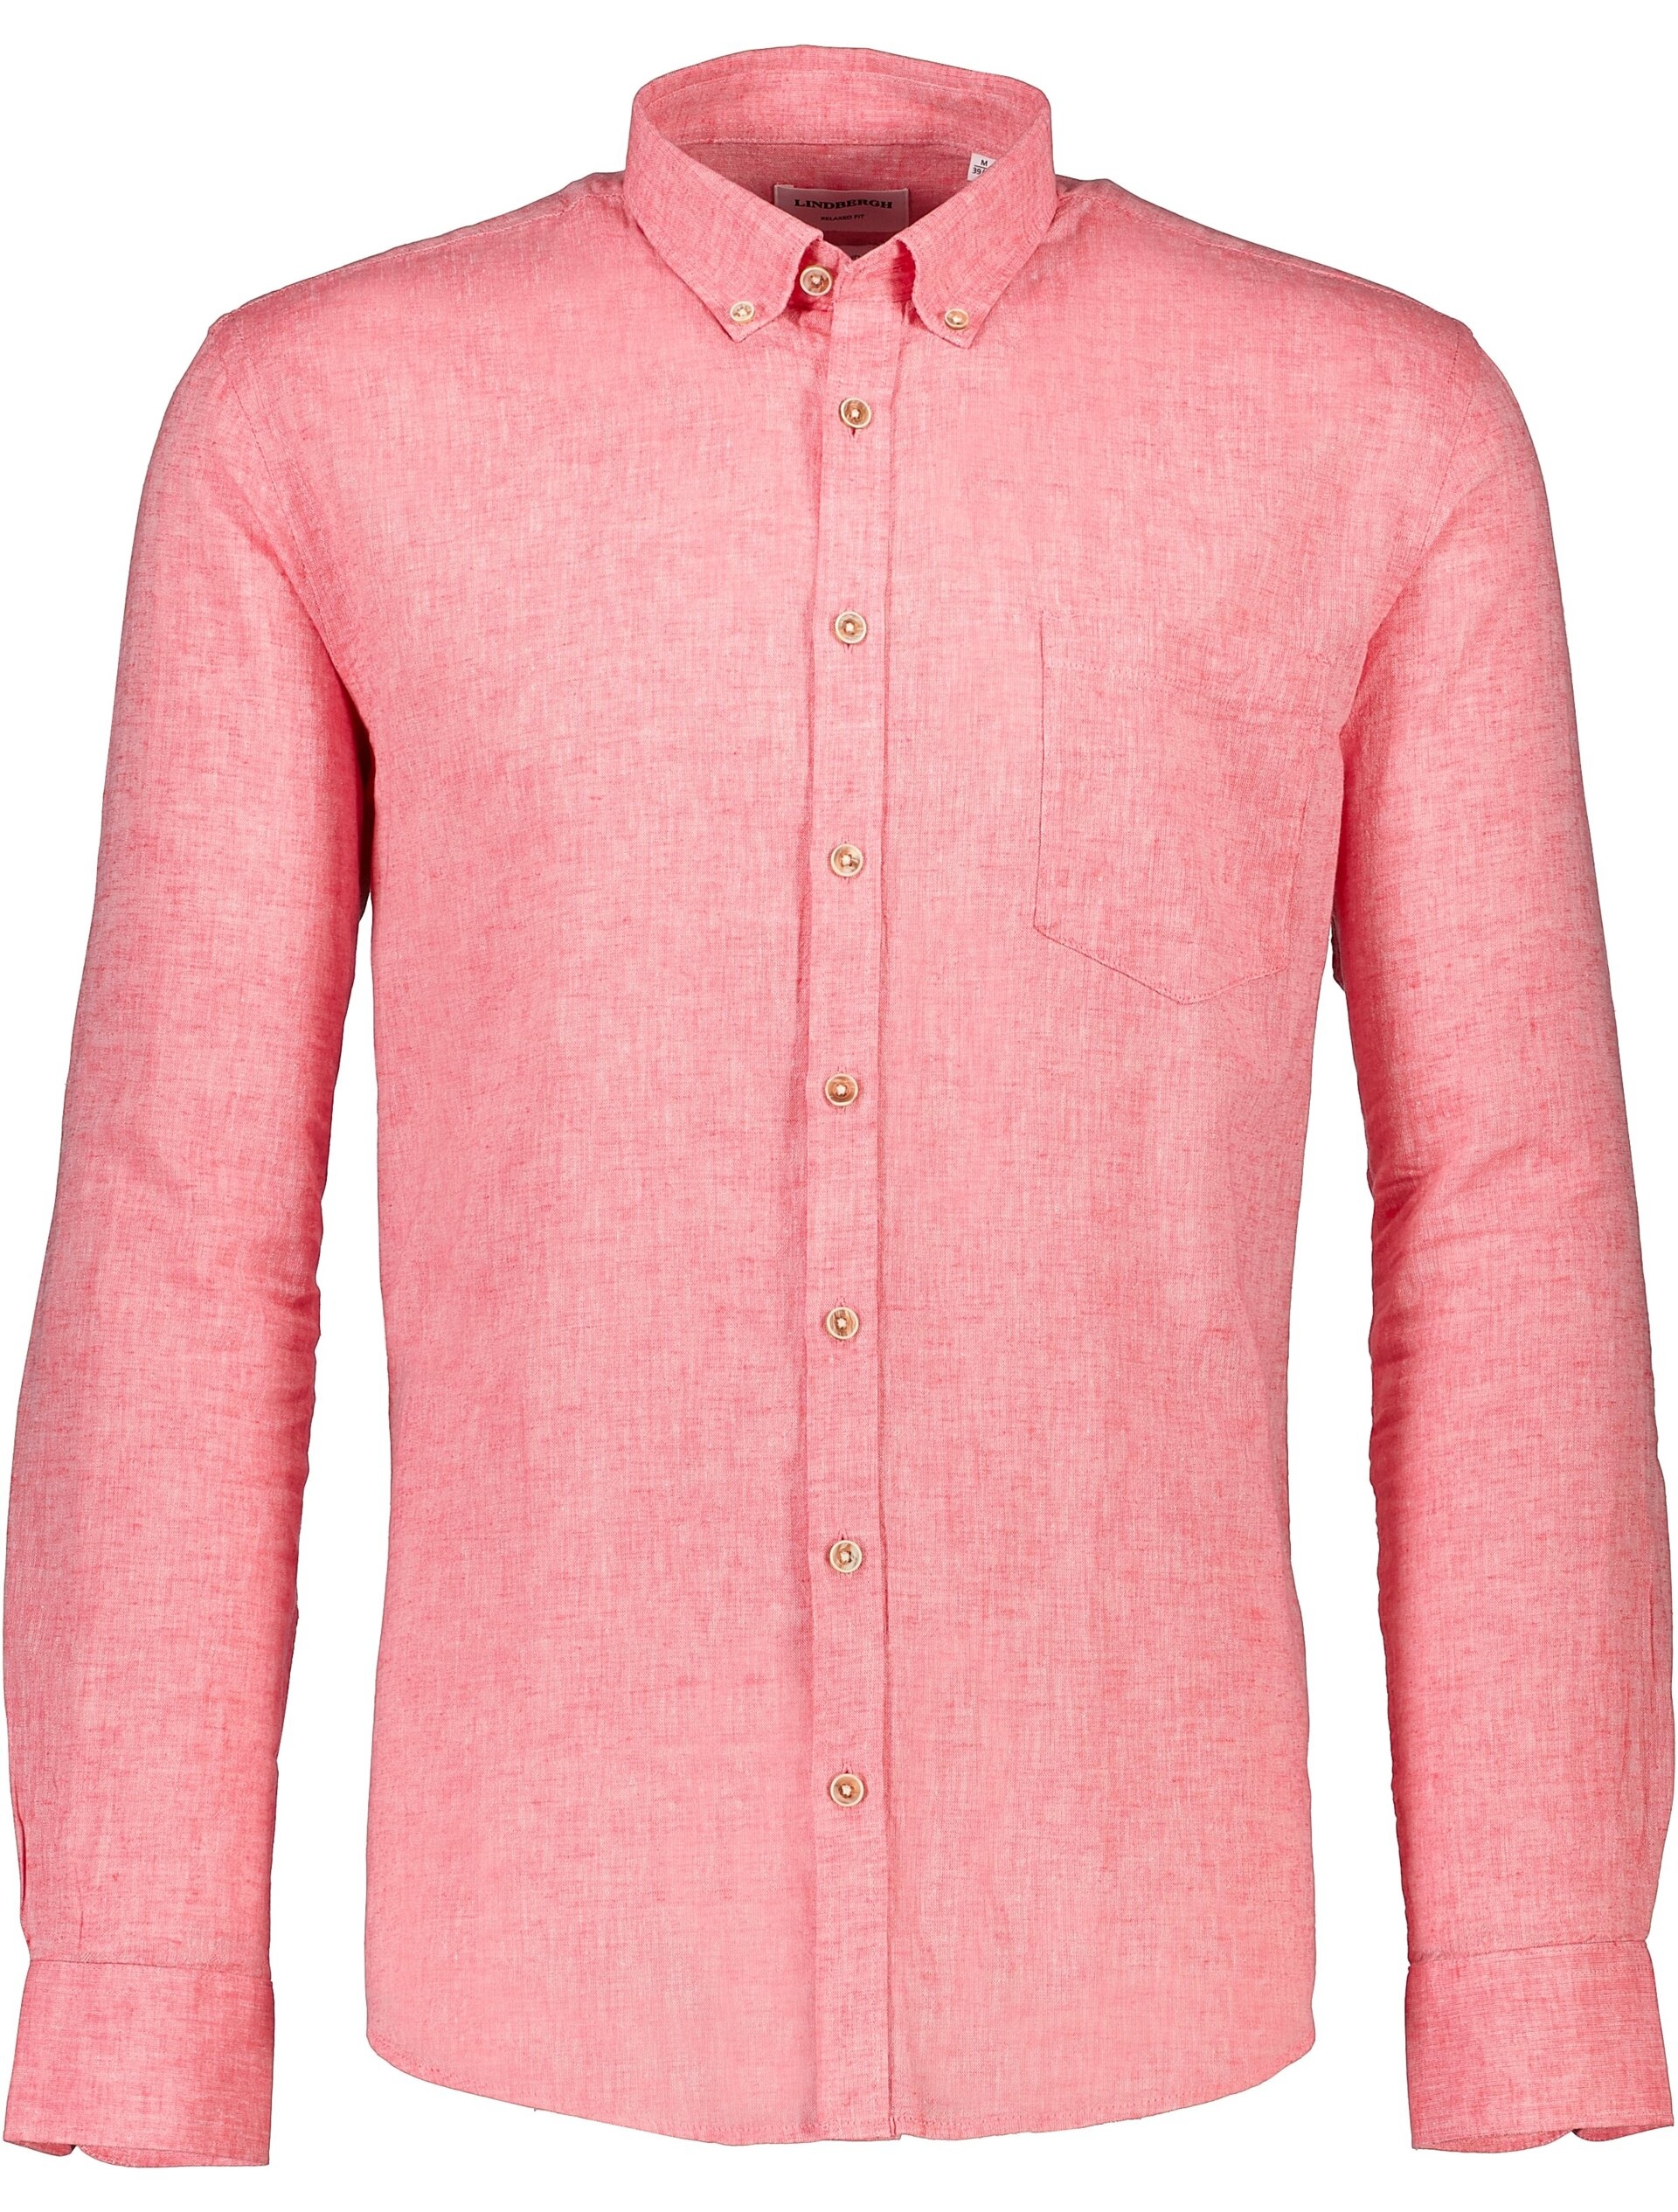 Lindbergh Linen shirt red / pink